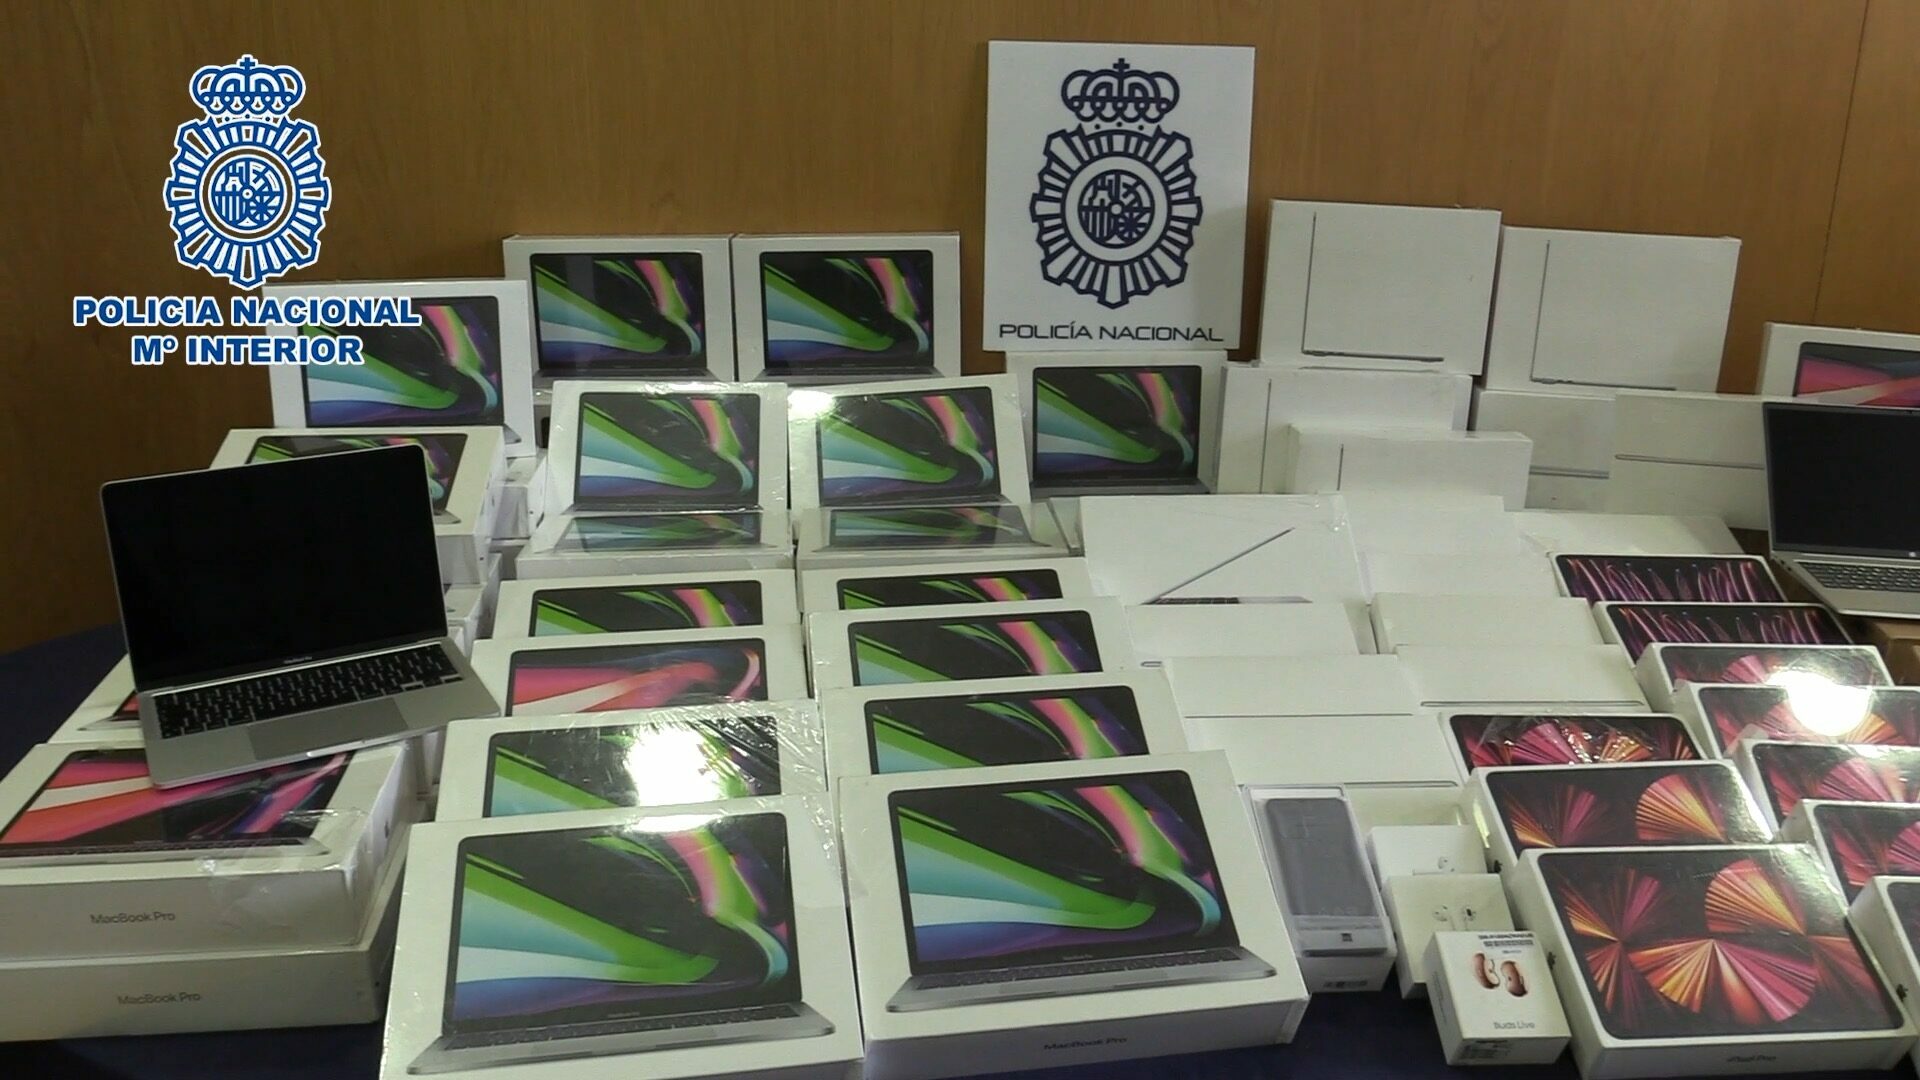 El material informático robado que fue incautado por la Policía Nacional en Madrid